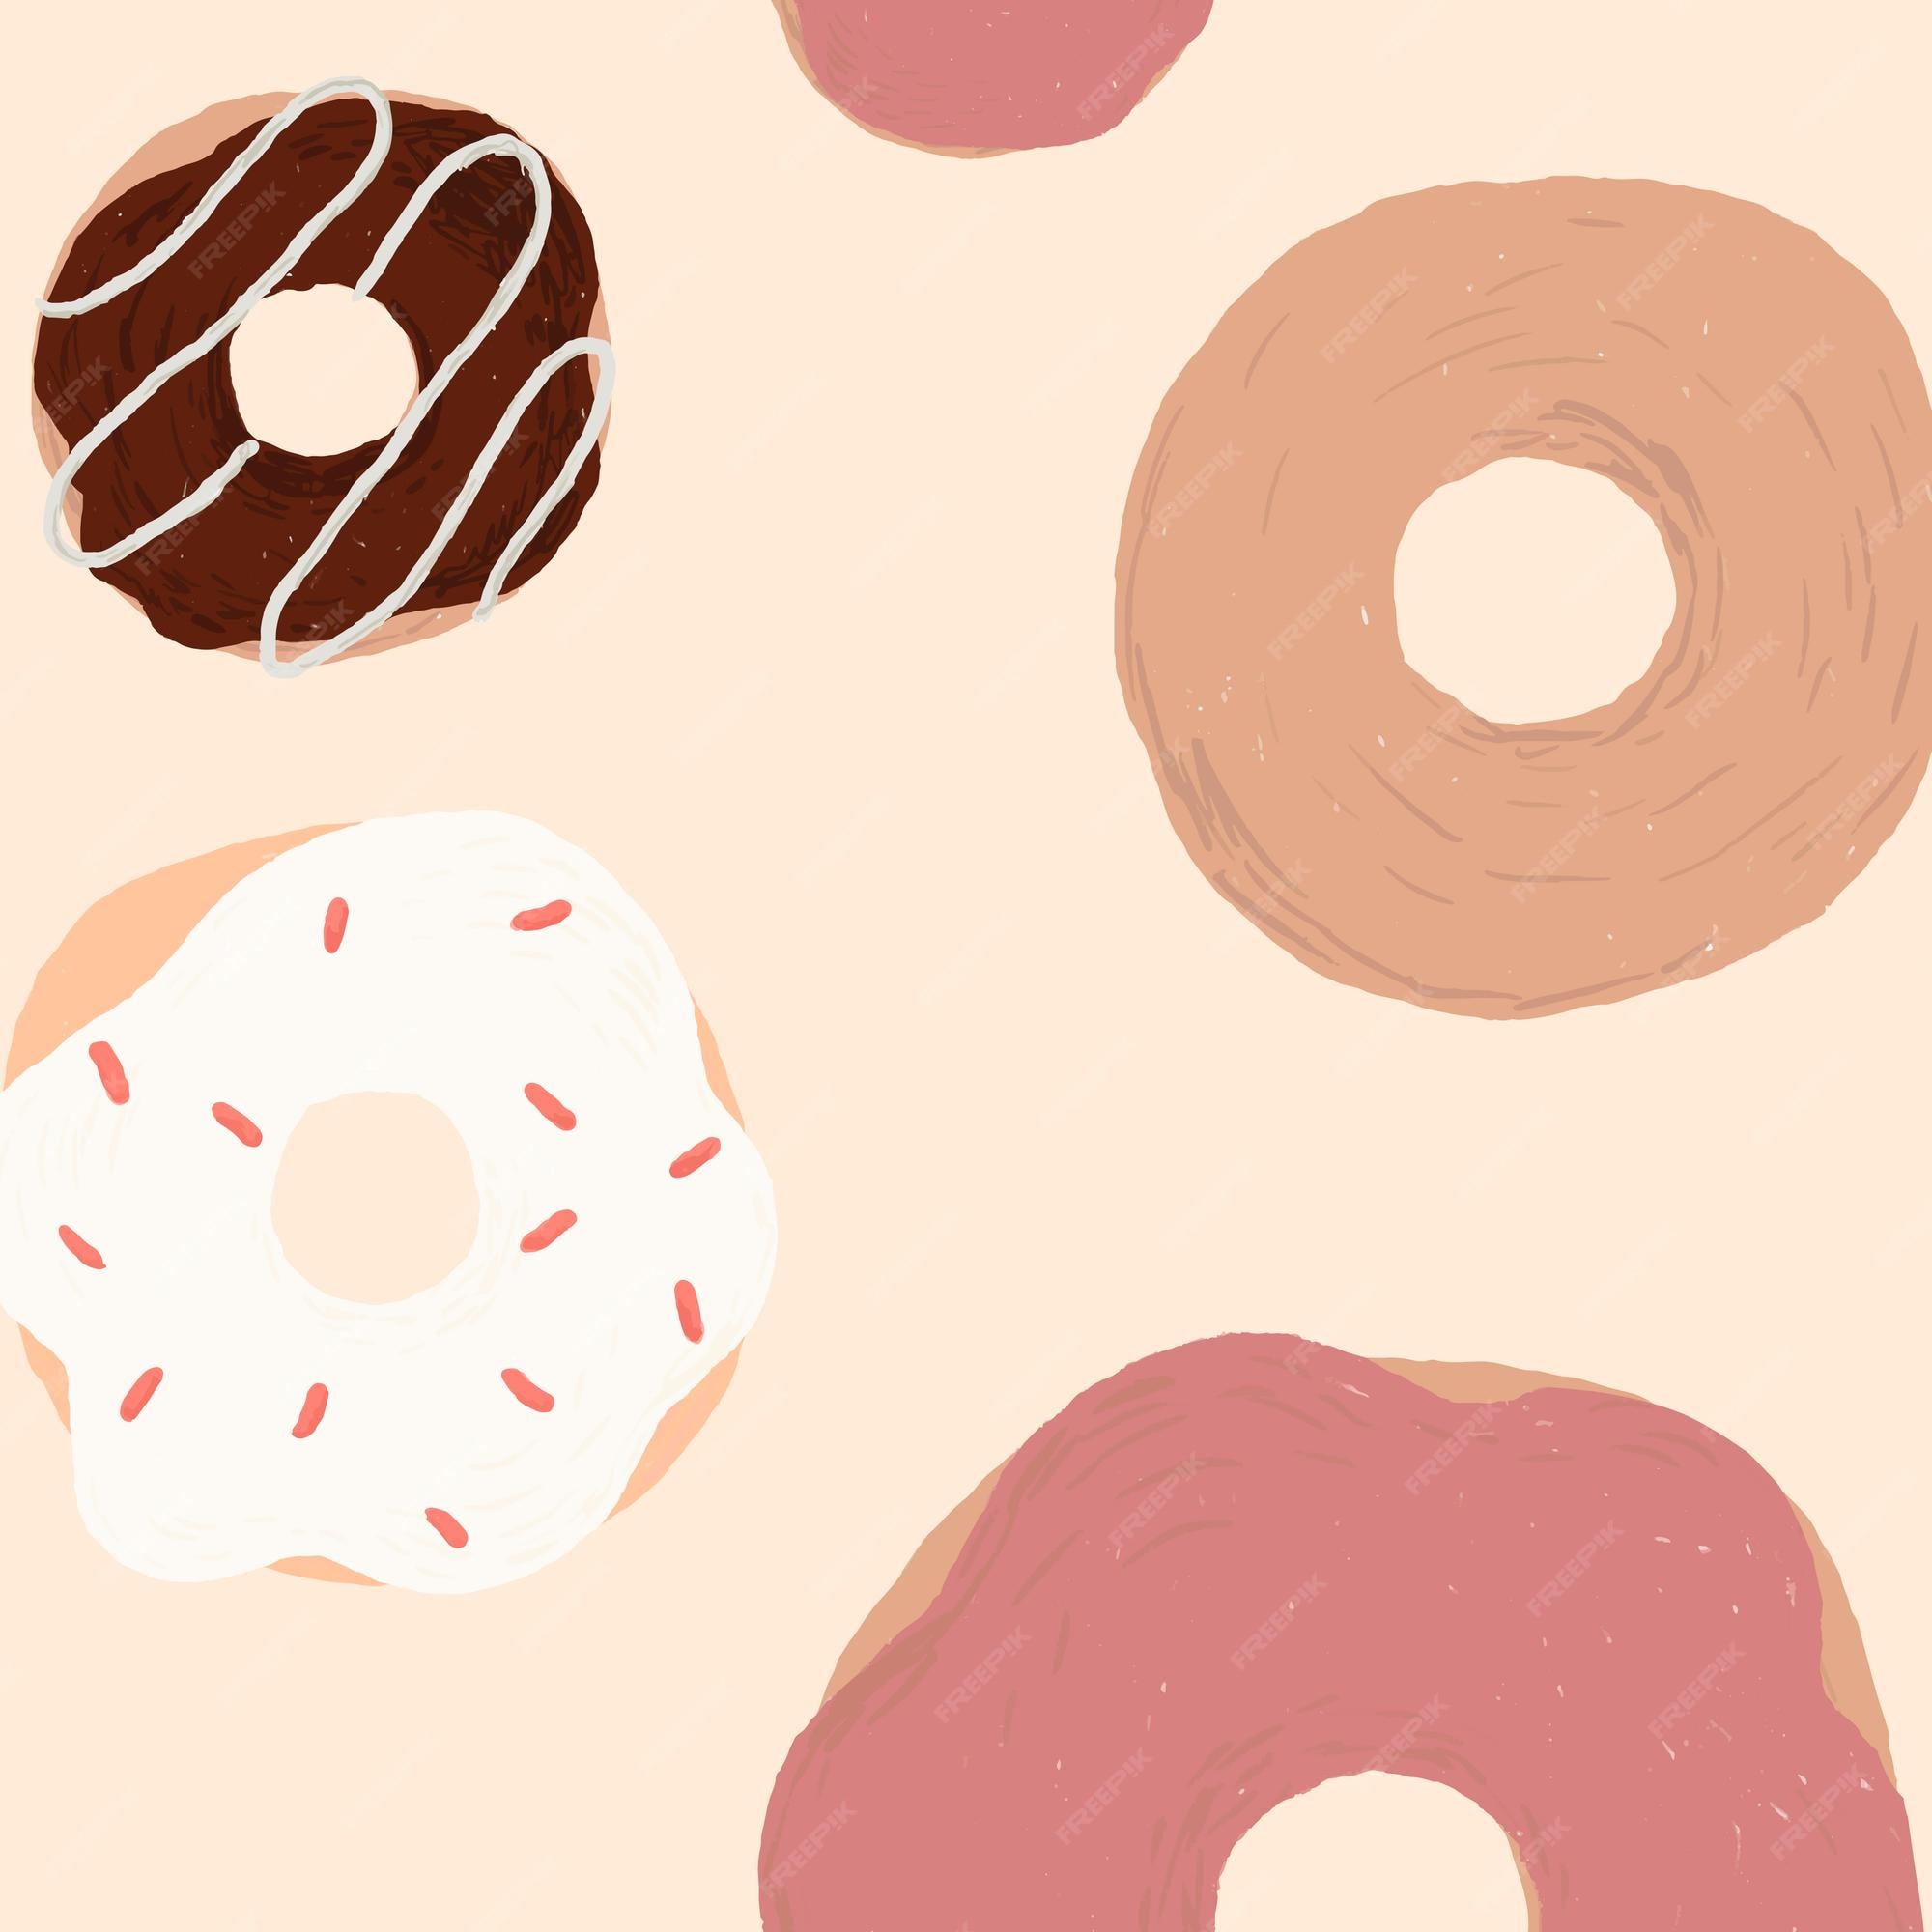 Donut Pattern Images - Free Download on Freepik